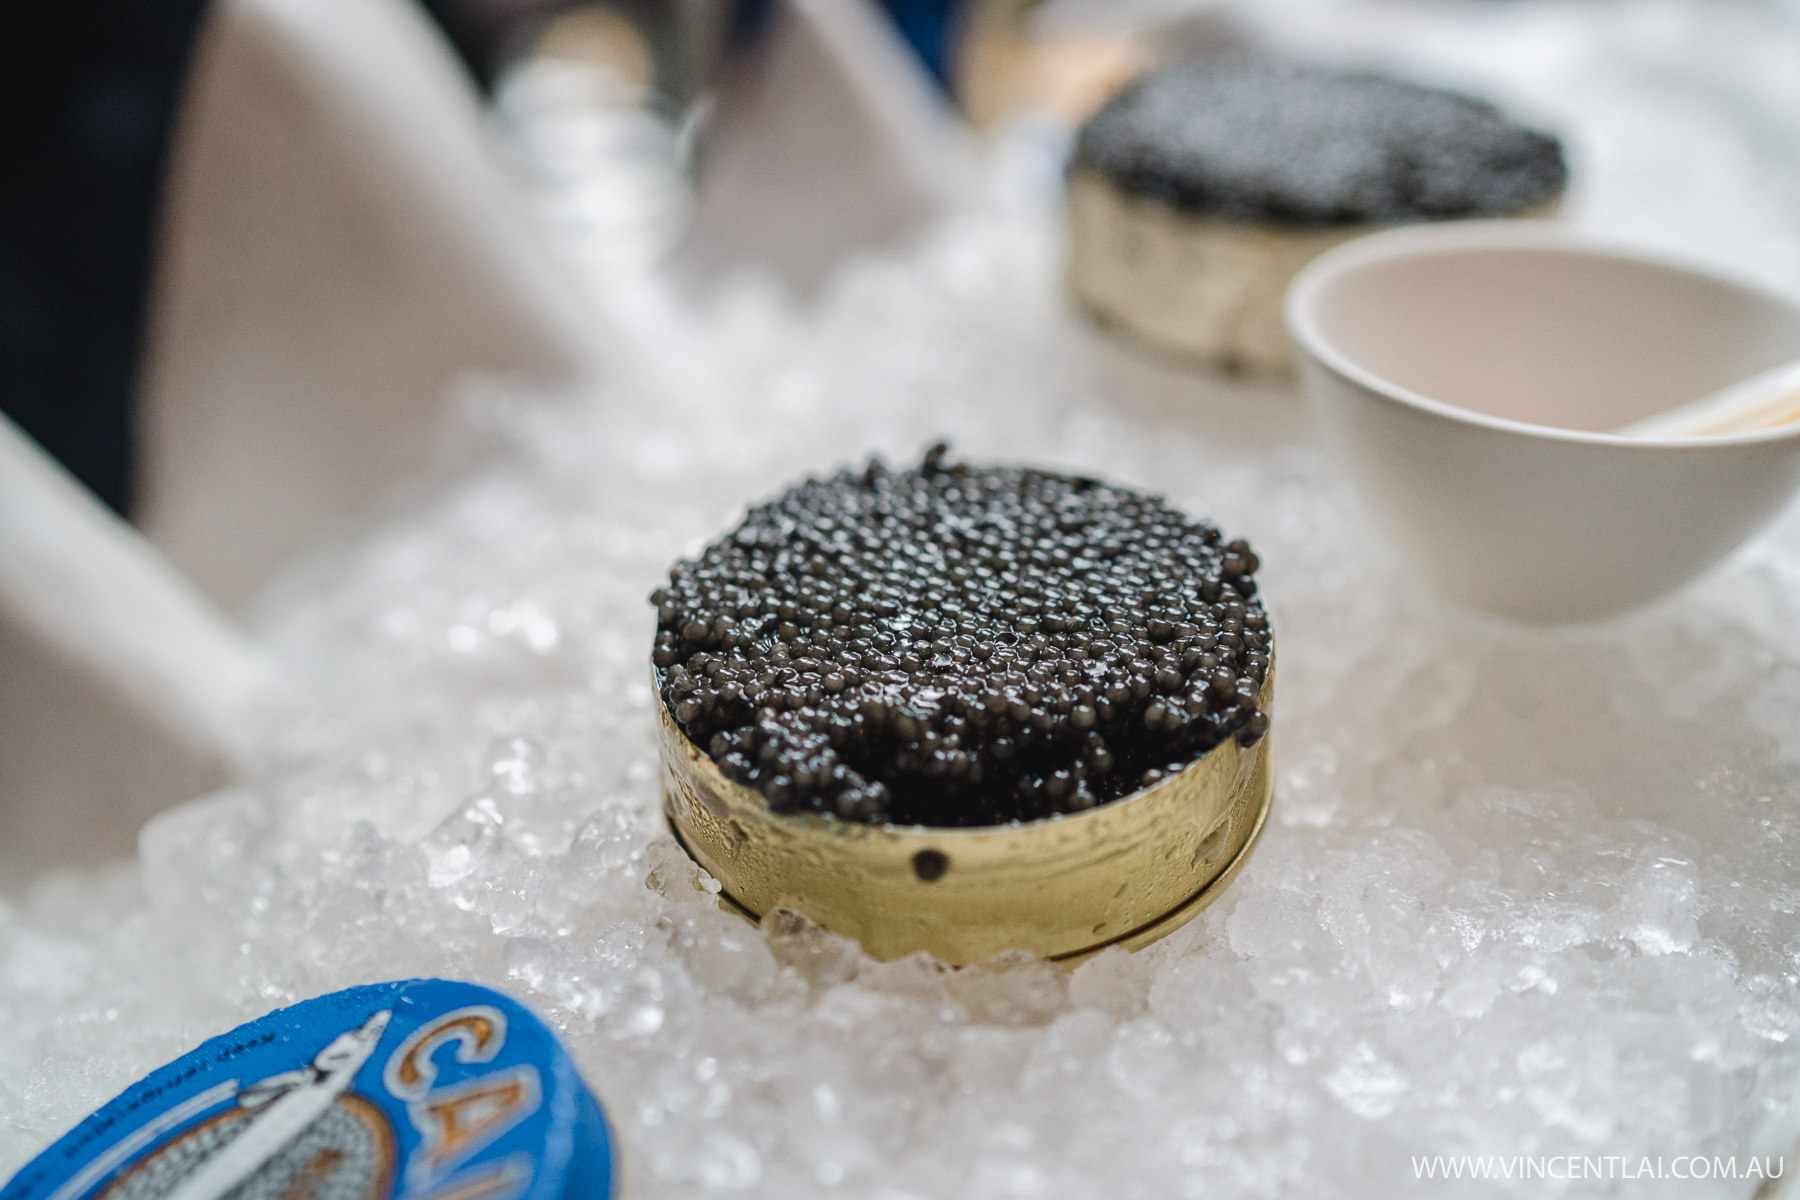 Black Pearl Beluga Caviar